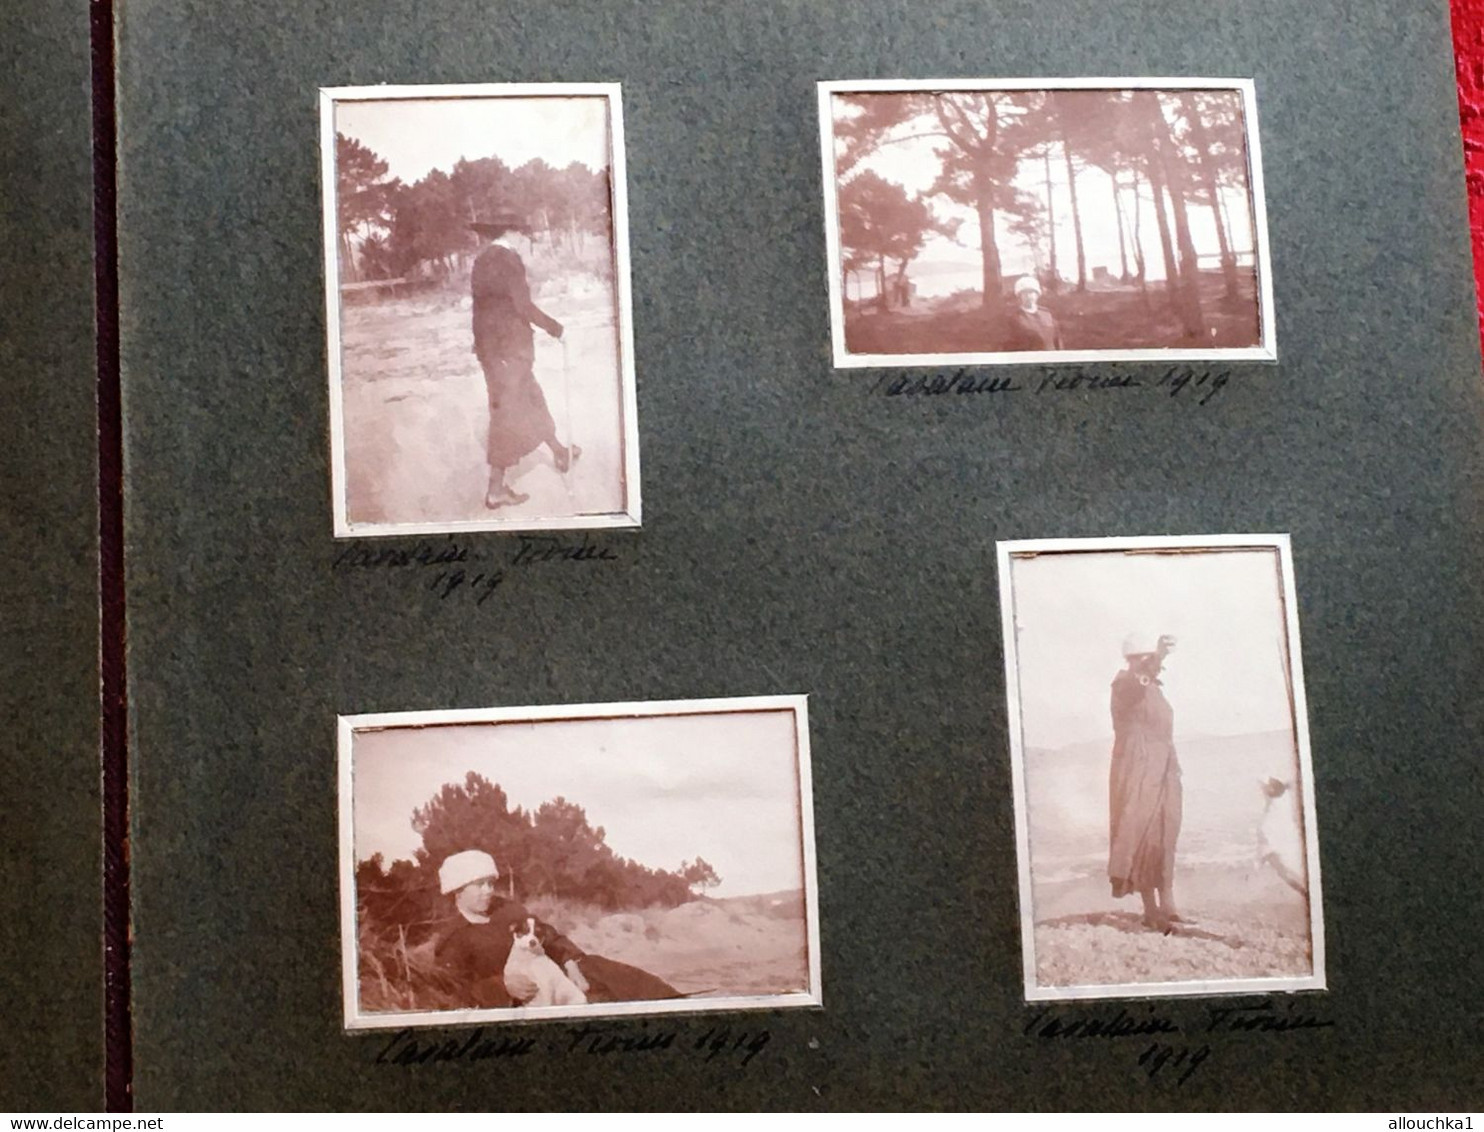 1918/25 Cavalaire-Hyères-Lavandou-Pardigon-Croix-Valmer-Album 87 Photo Original Photographie-Militaires-Bourgeois-Sépia